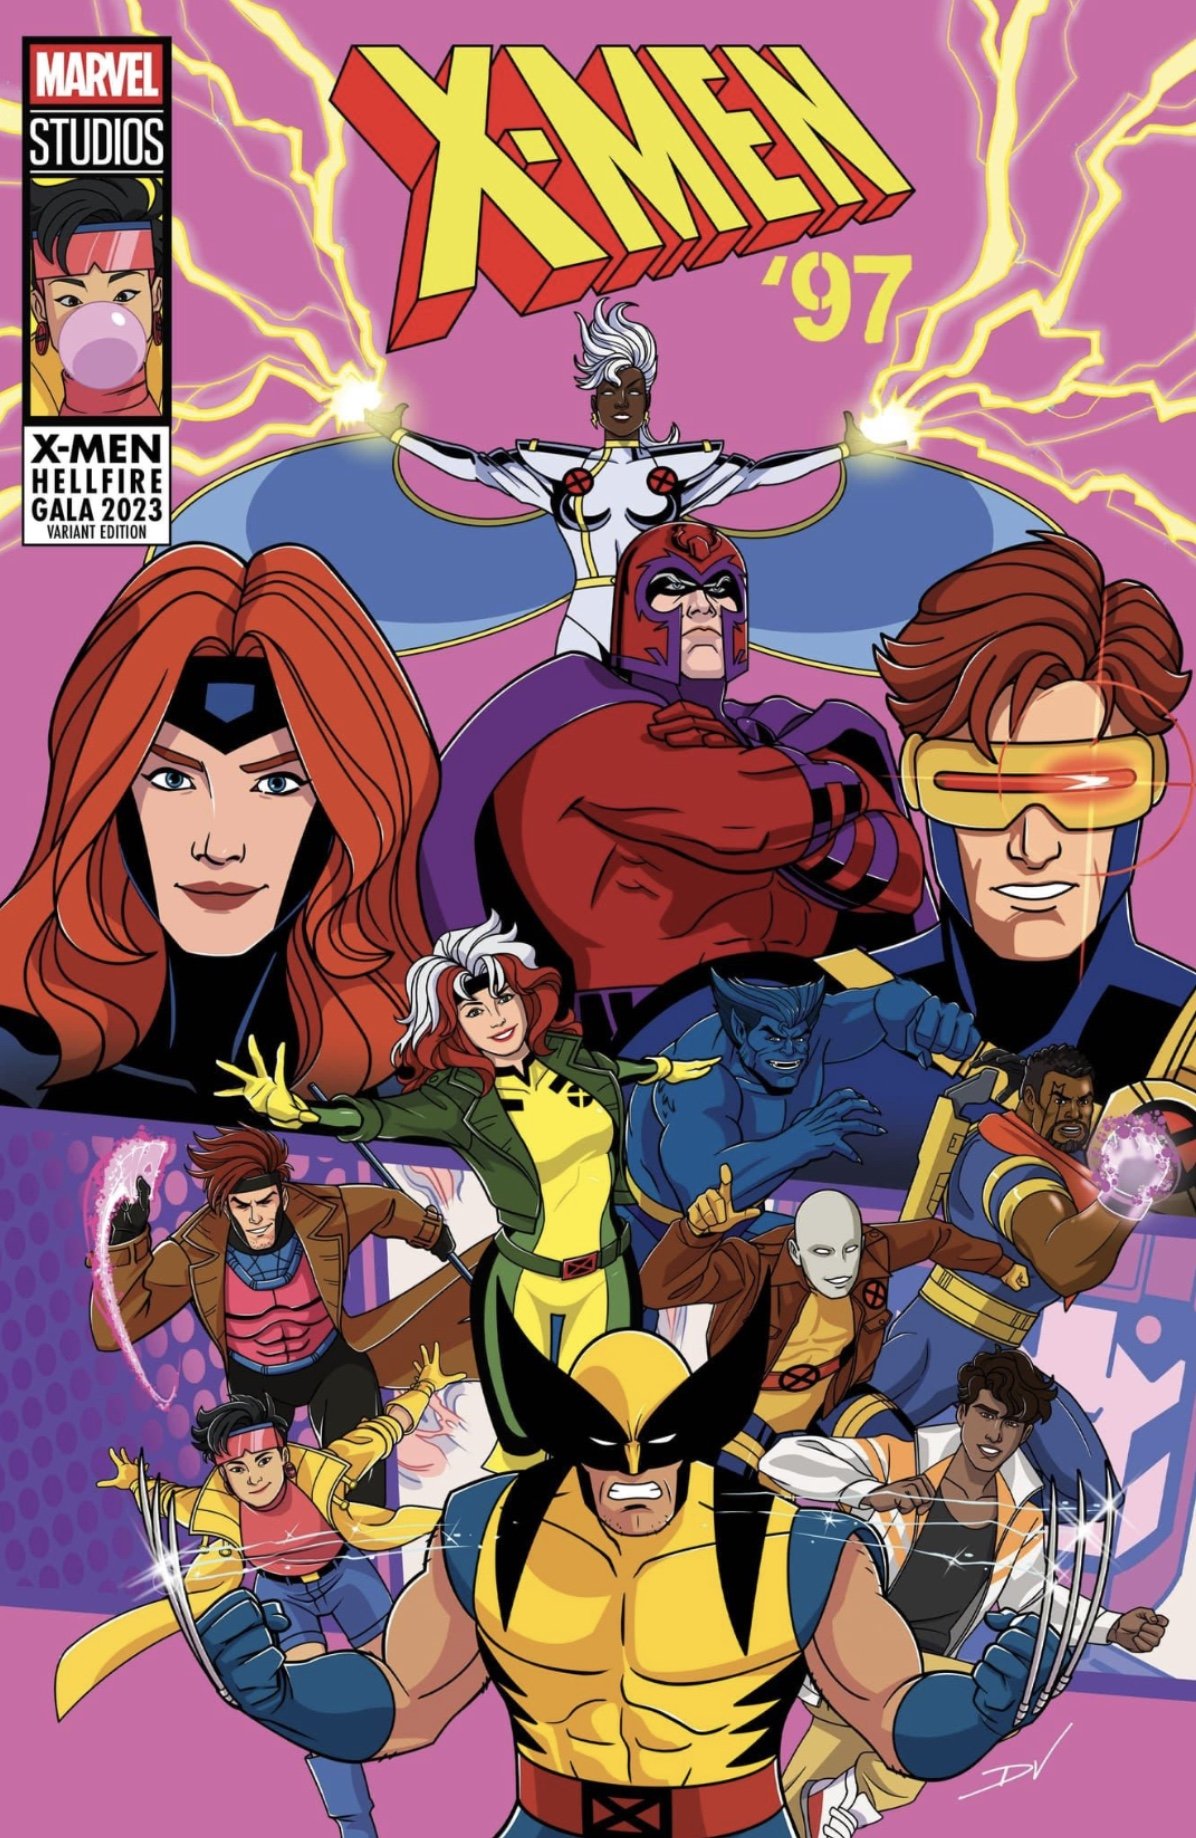 New Promo Art for Marvel's XMEN '97 Series Revealed as Variant Cover